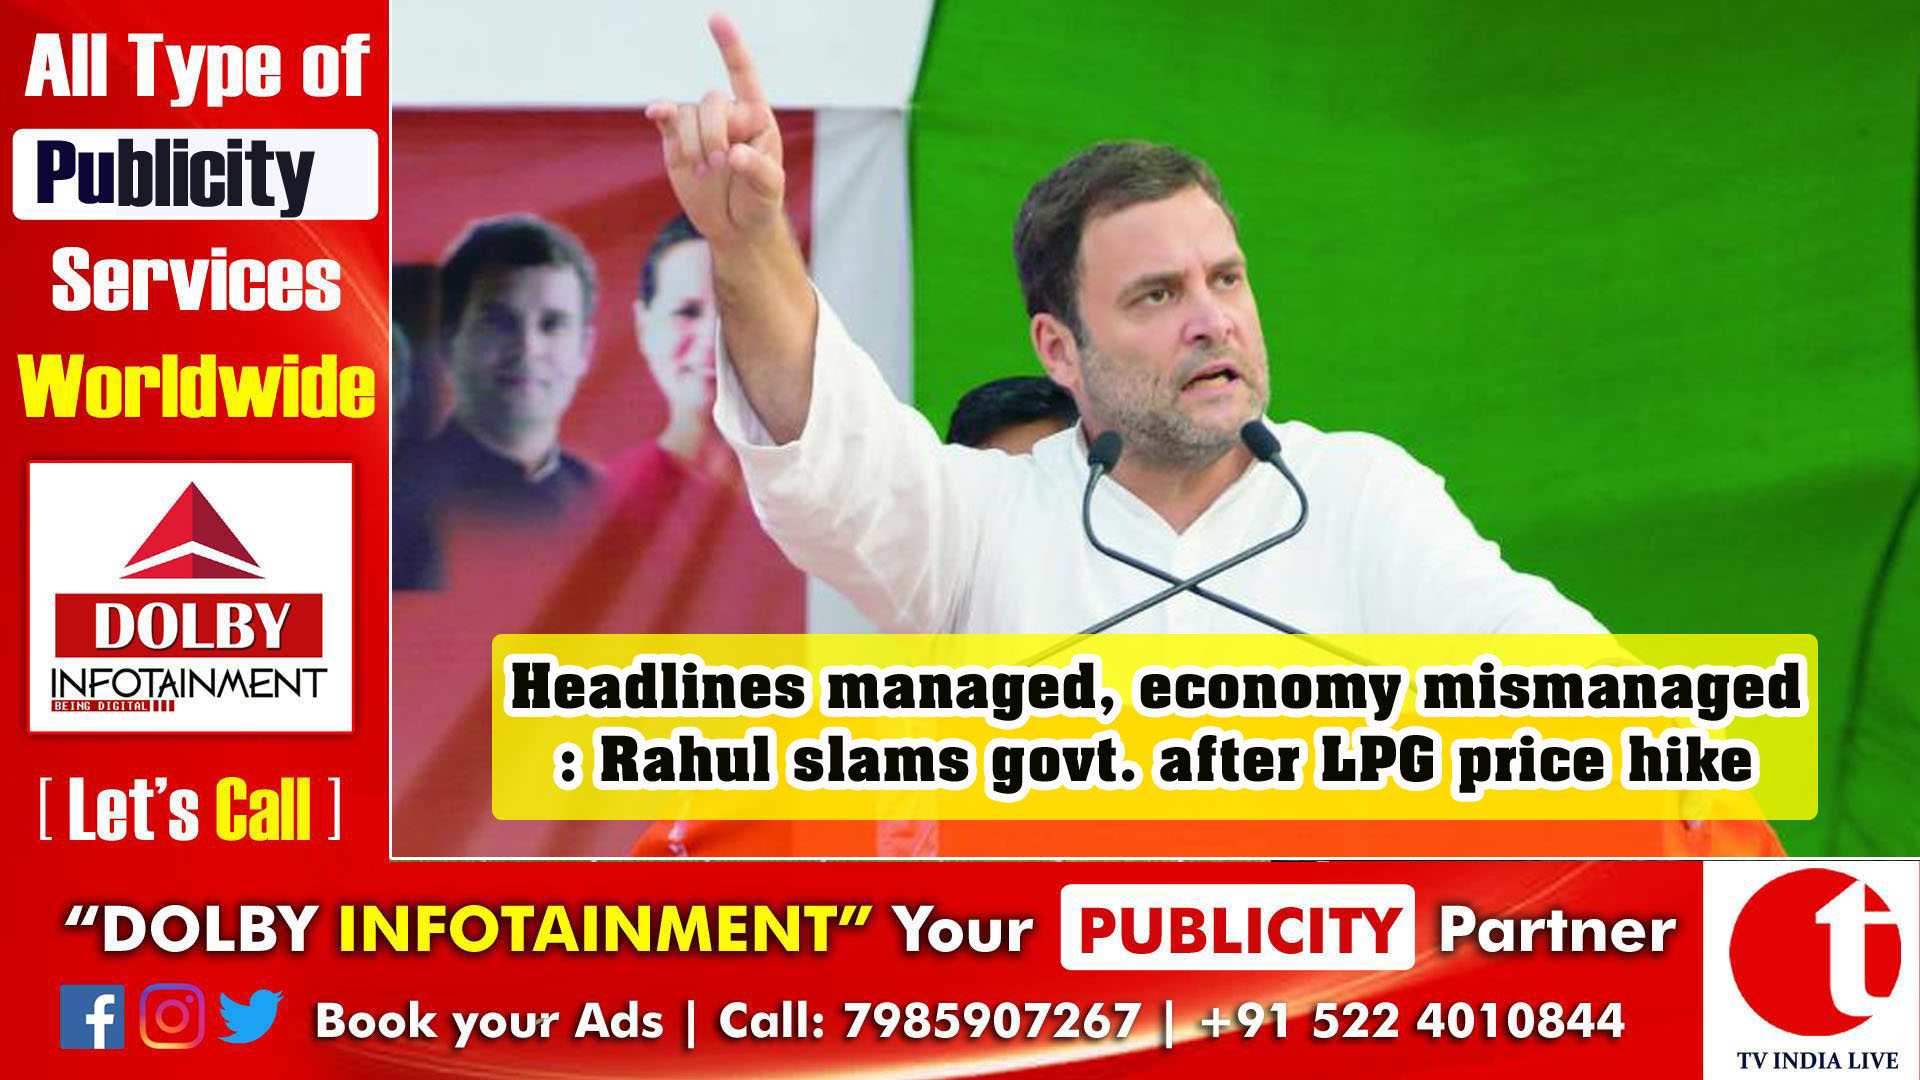 Headlines managed, economy mismanaged: Rahul slams govt. after LPG price hike